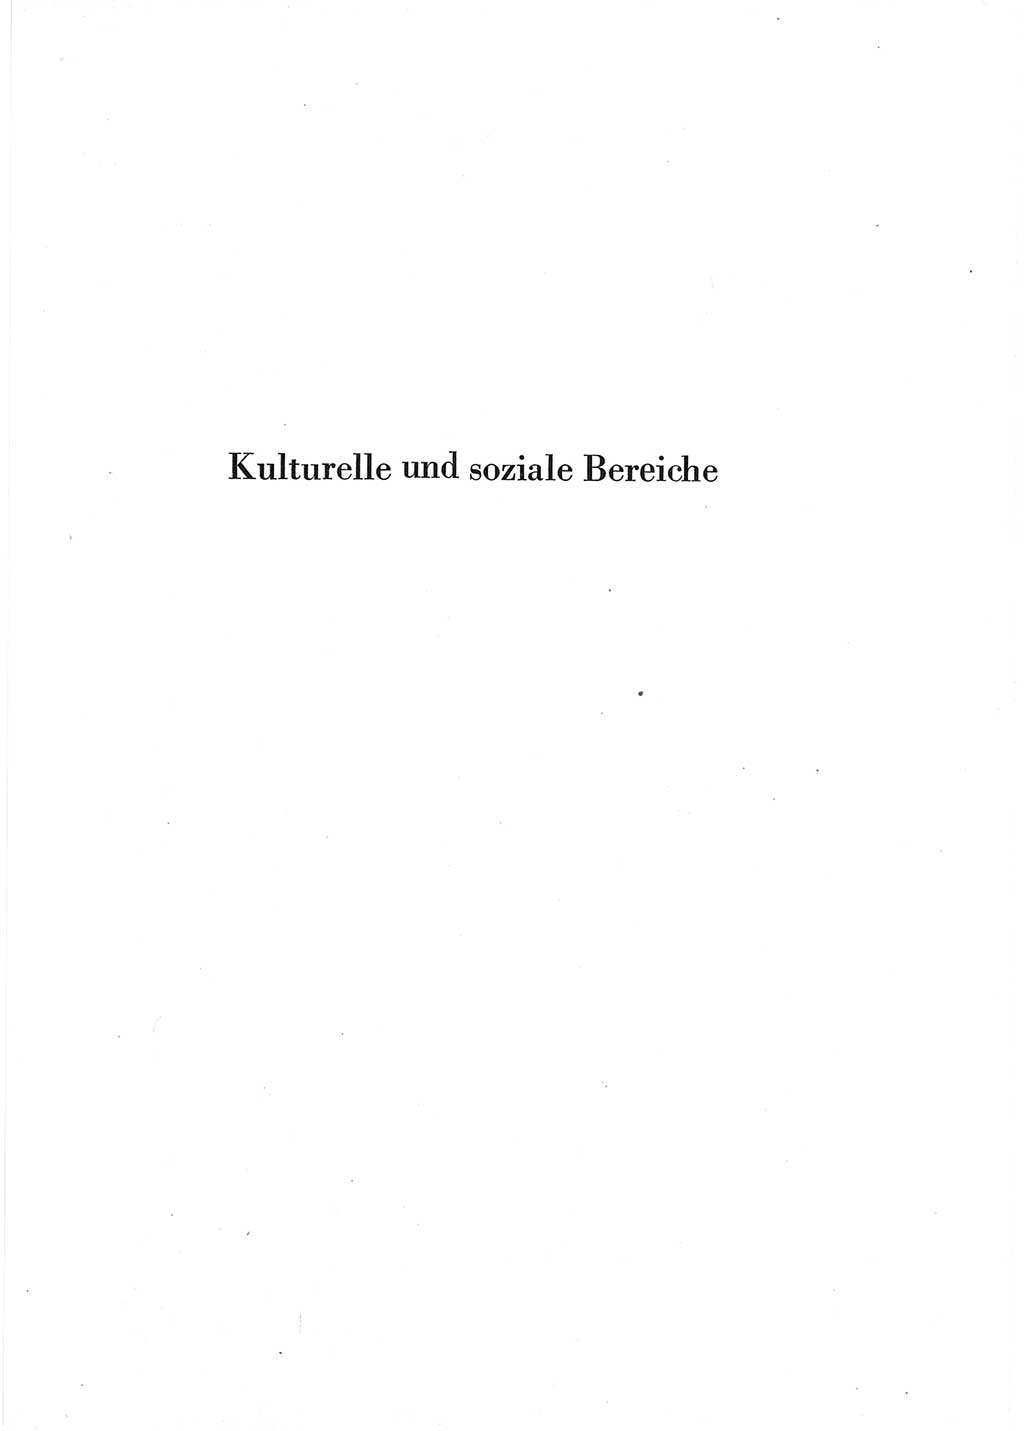 Statistisches Jahrbuch der Deutschen Demokratischen Republik (DDR) 1965, Seite 439 (Stat. Jb. DDR 1965, S. 439)